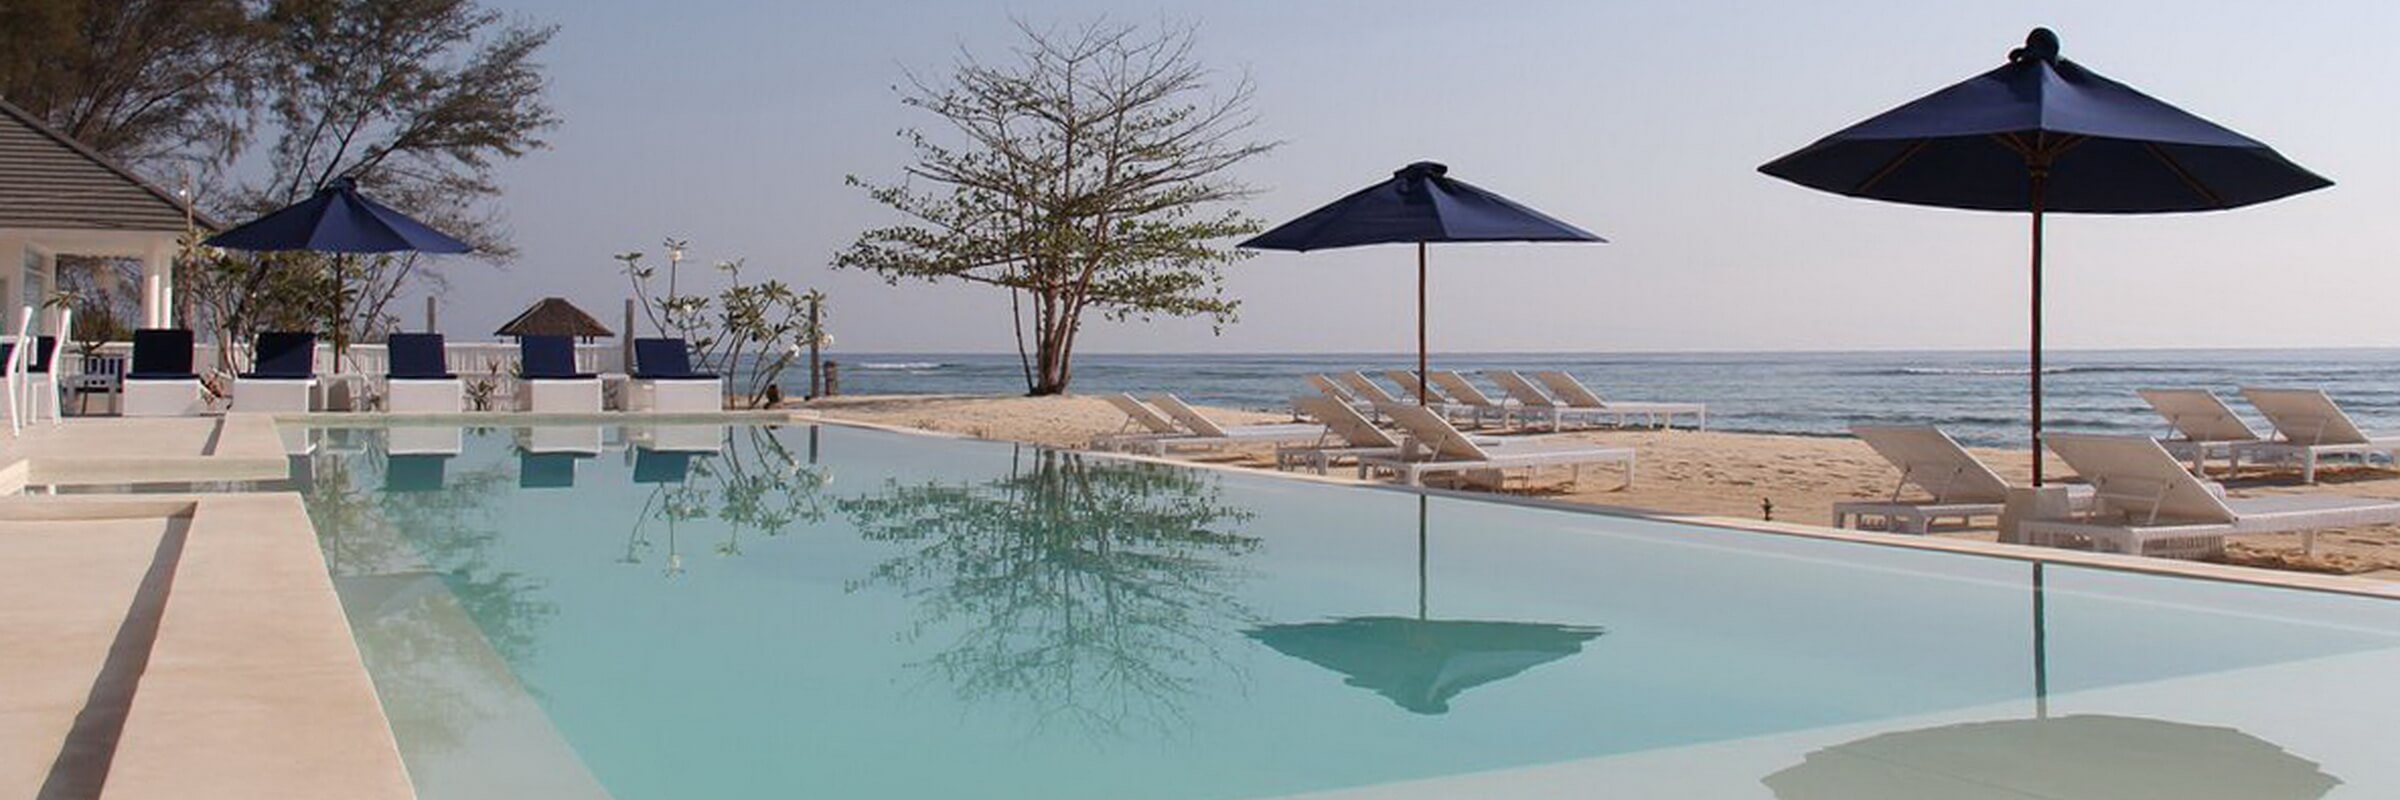 Der herrliche Swimmingpool im Seri Resort lädt zum entspannten Schwimmen und Sonnenbaden ein.